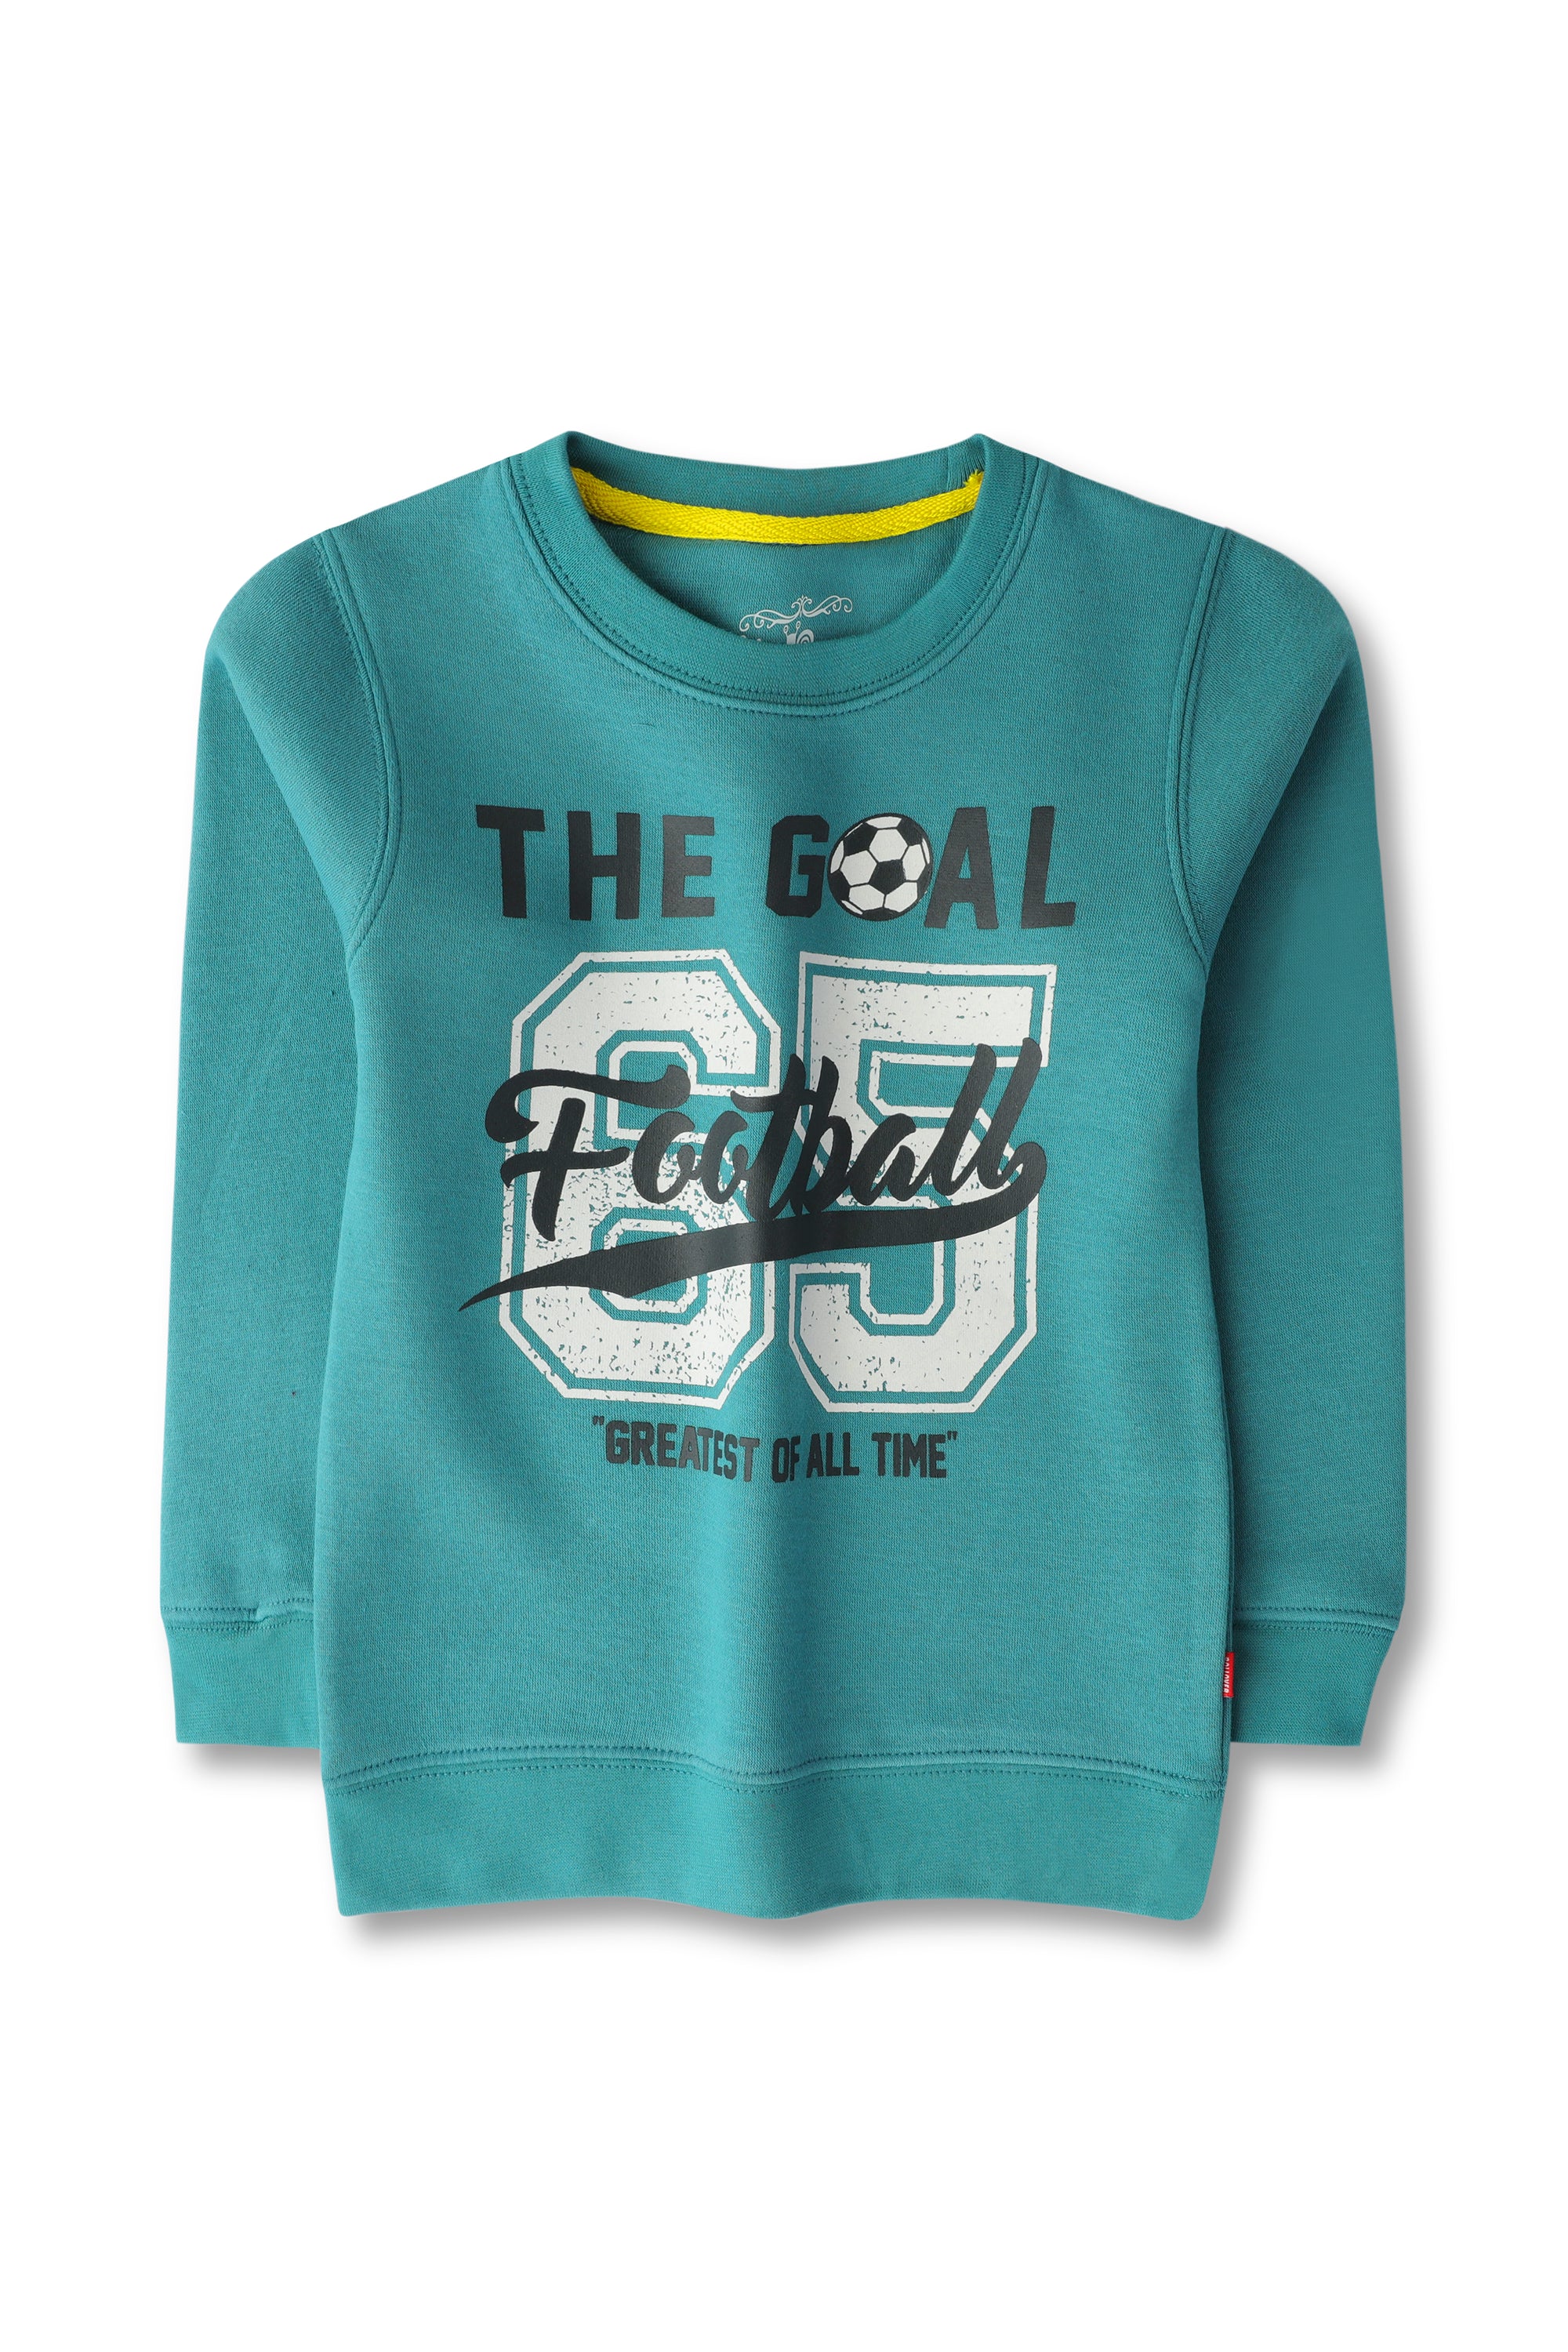 Boys Teal Fleece Graphic Sweatshirt